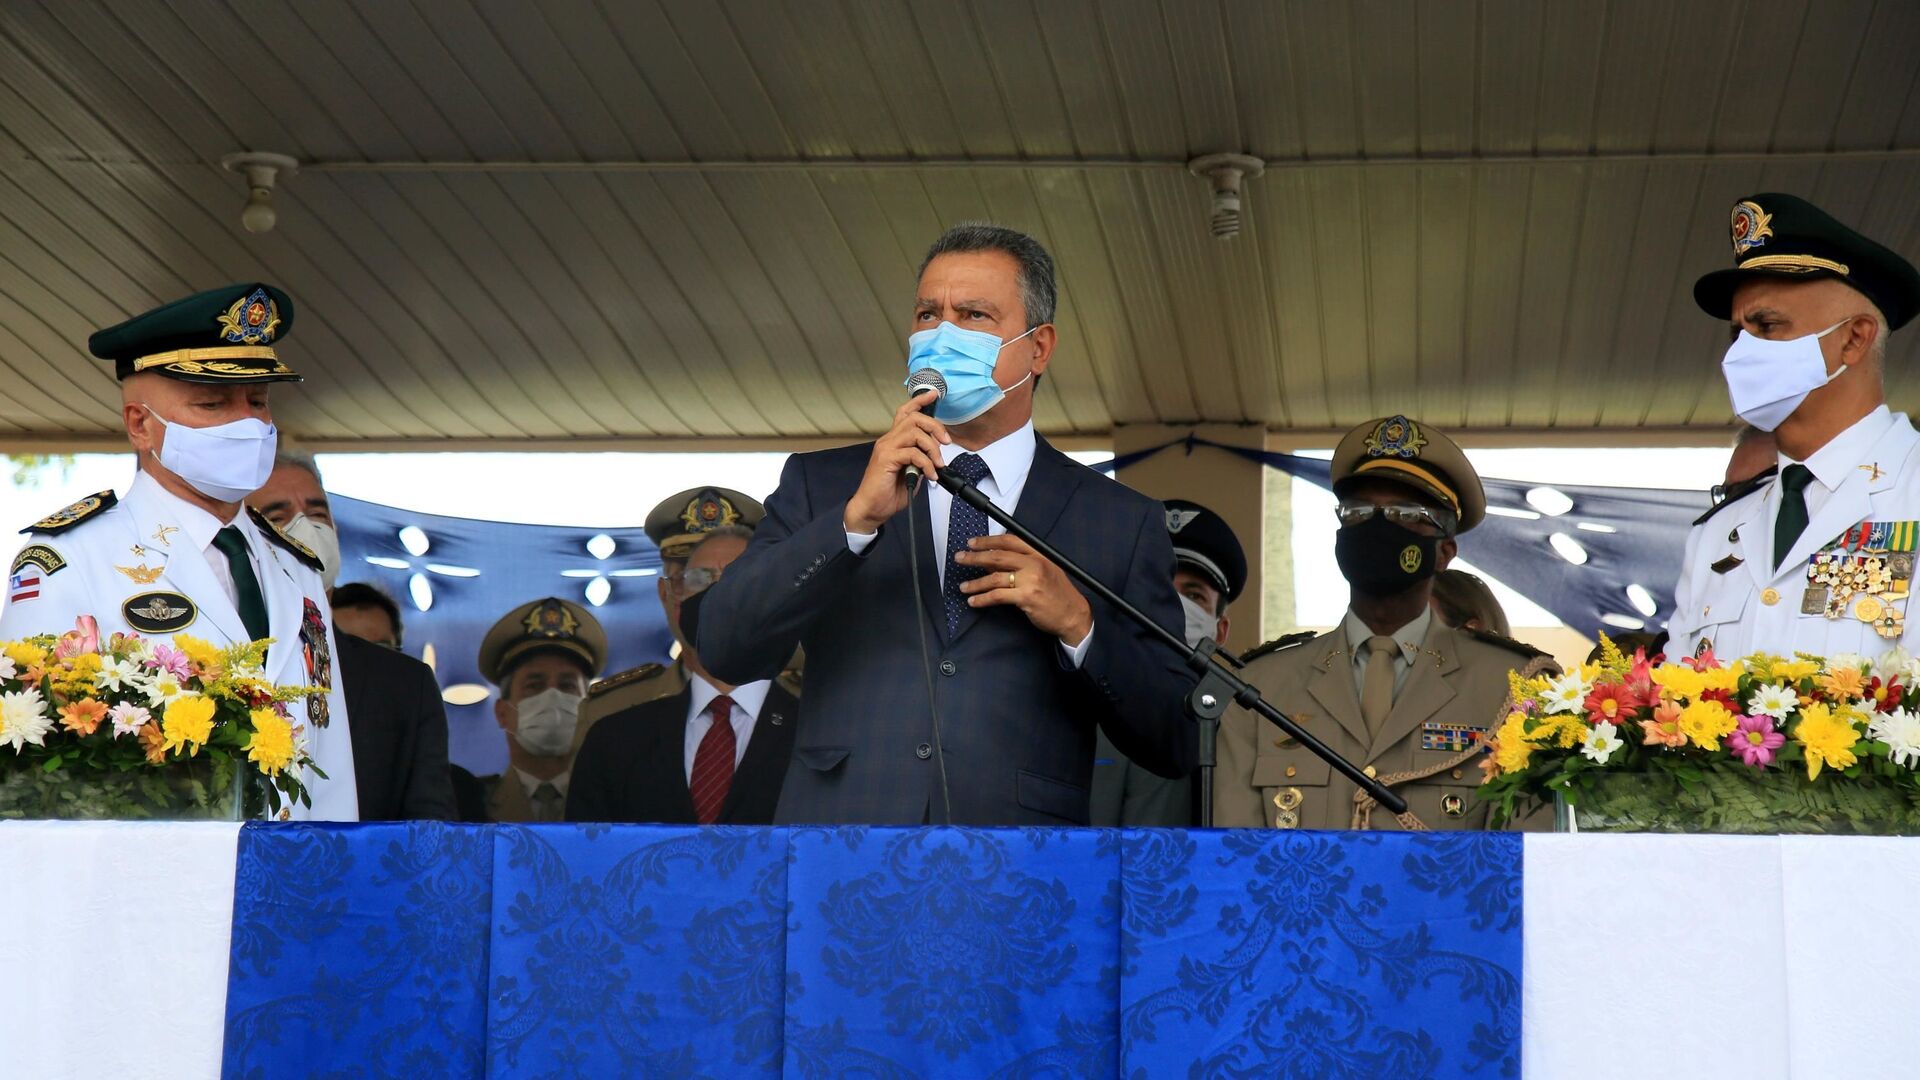 Em Salvador, o governador da Bahia, Rui Costa (PT), participa de cerimônia de troca do comando da Polícia Militar em meio à pandemia da COVID-19, em 13 de janeiro de 2021 - Sputnik Brasil, 1920, 23.12.2021